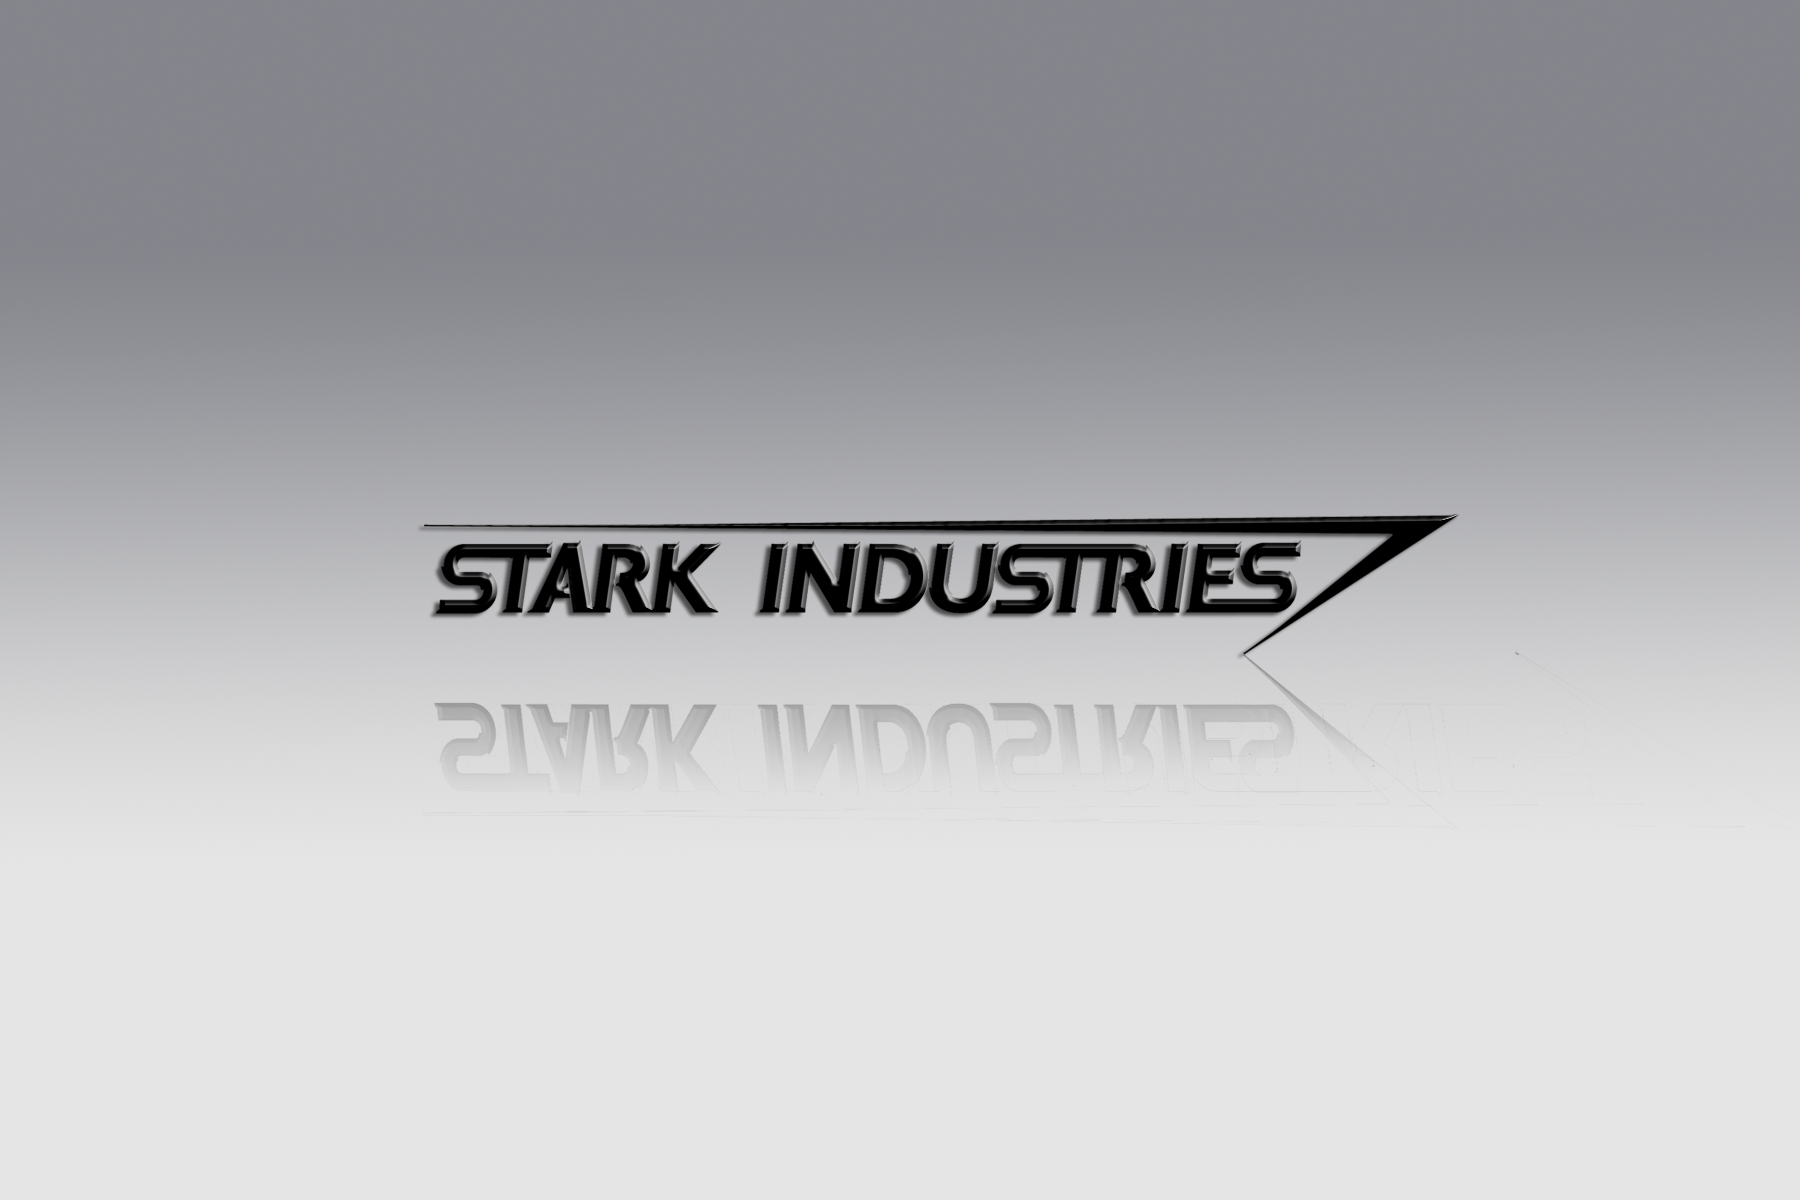 Company Iron Man Tony Stark 1800x1200